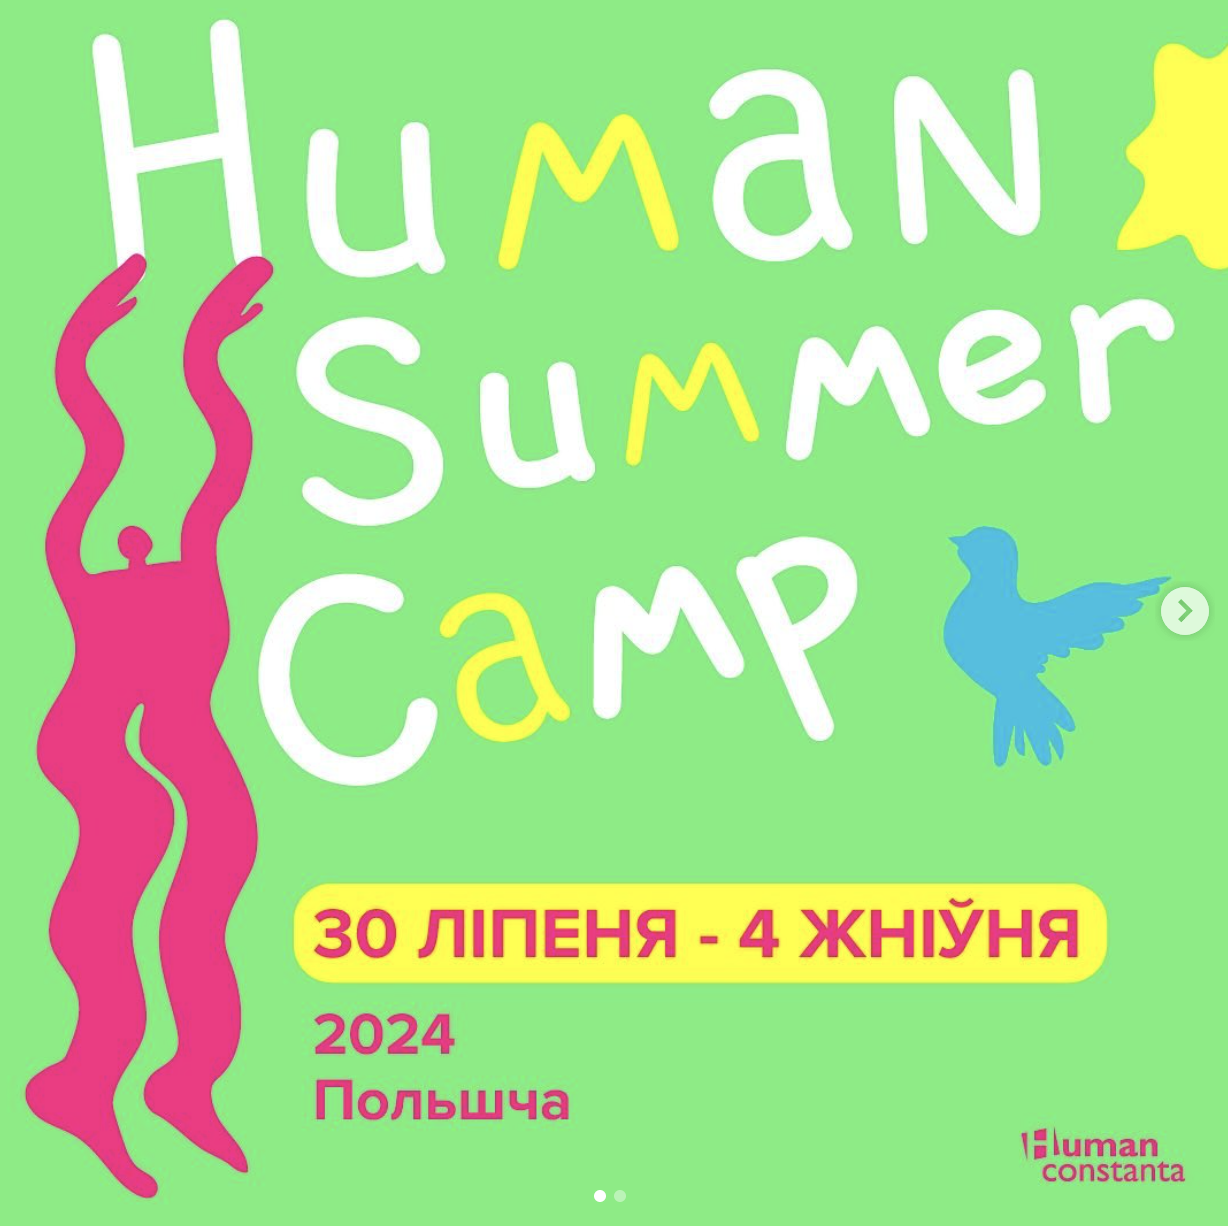 Набор на Human Summer Camp по правам человека!